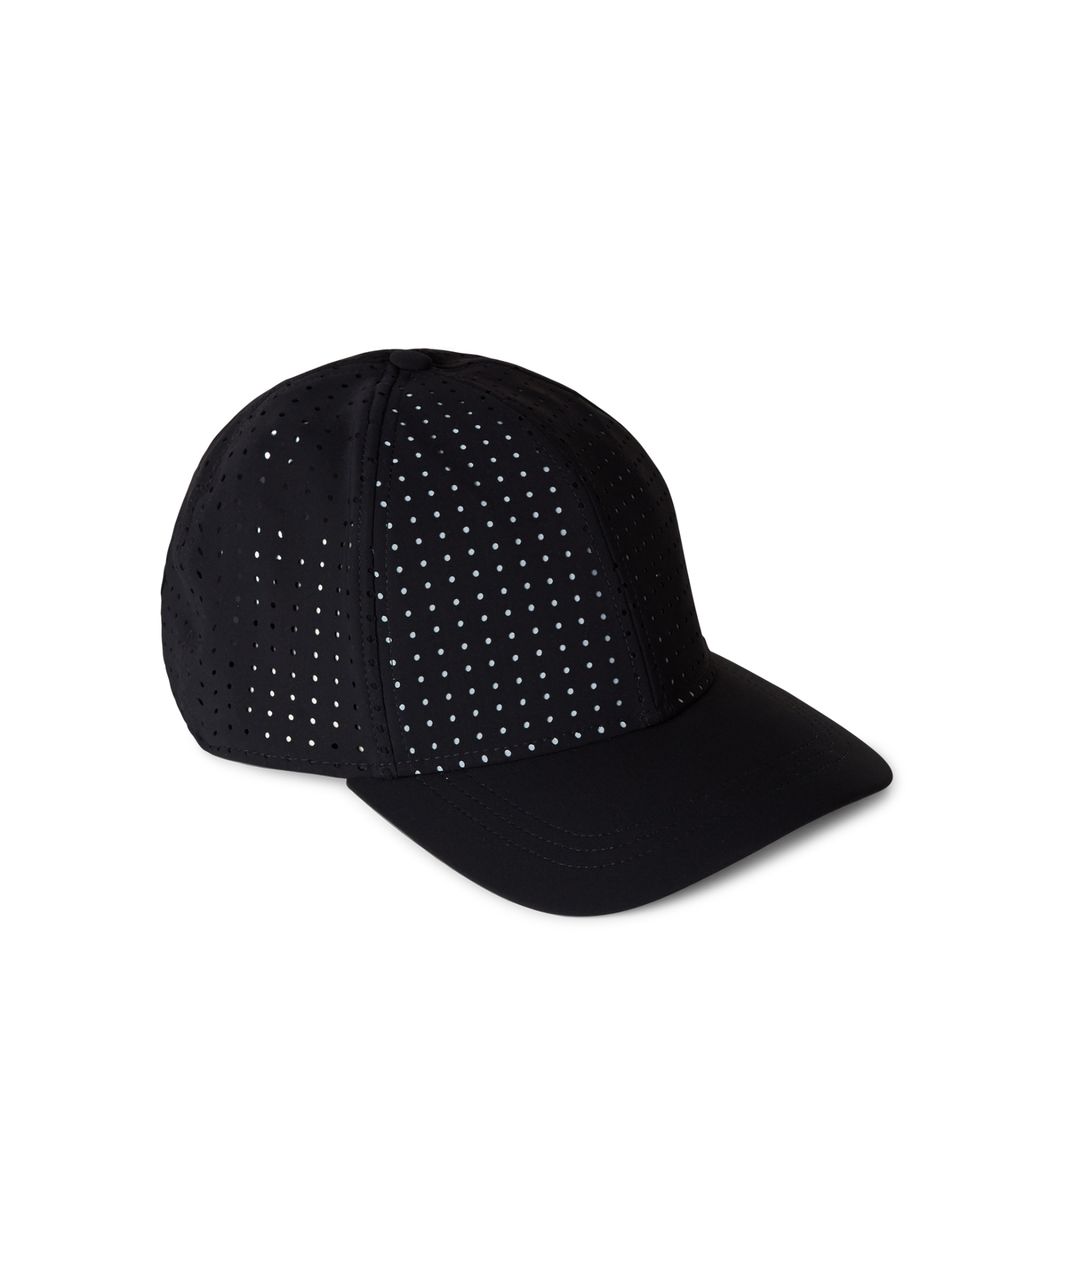 Lululemon Baller Hat - Black / Black (Mesh)